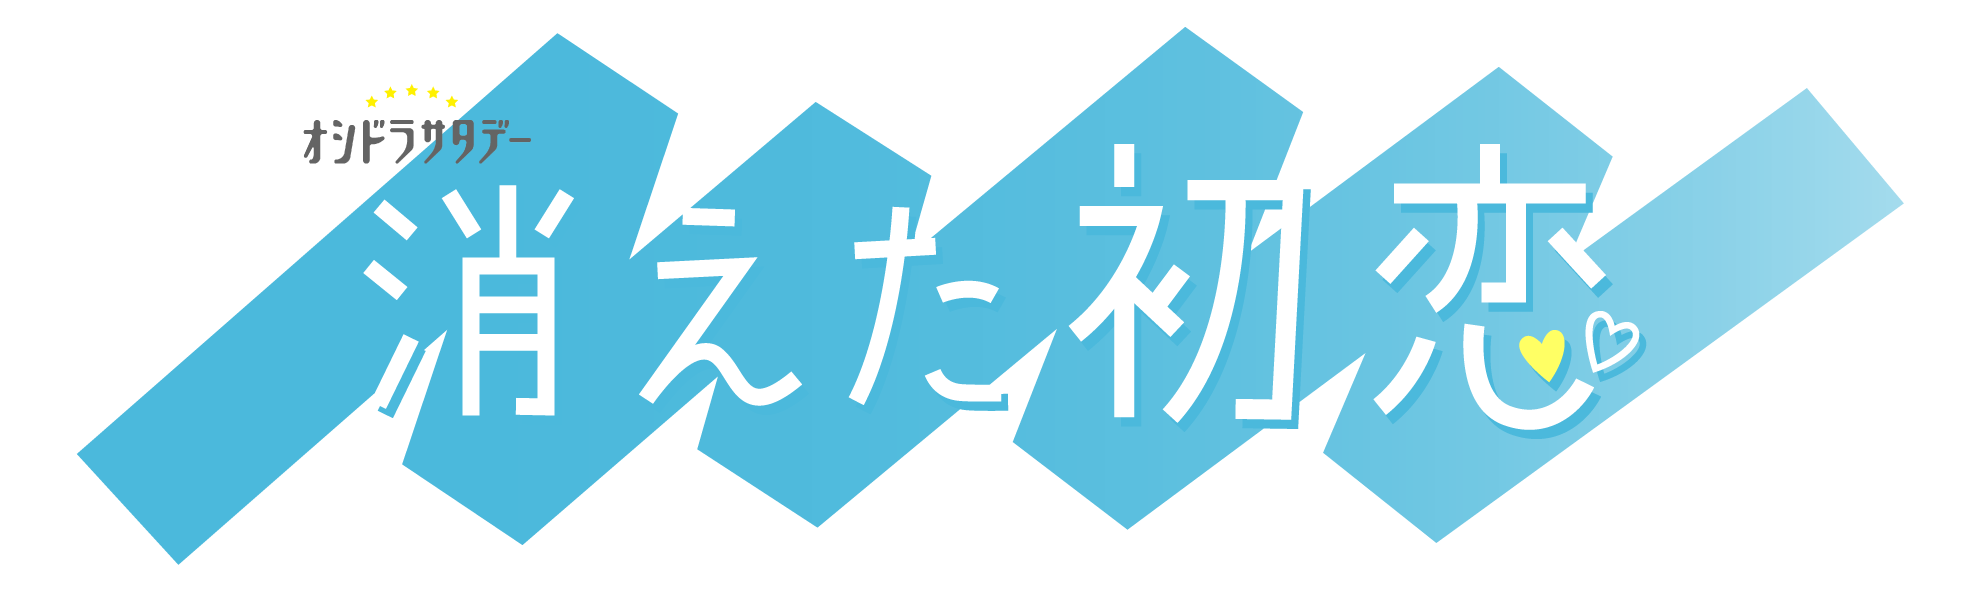 ★【消えた初恋】logoオシドラ入り01